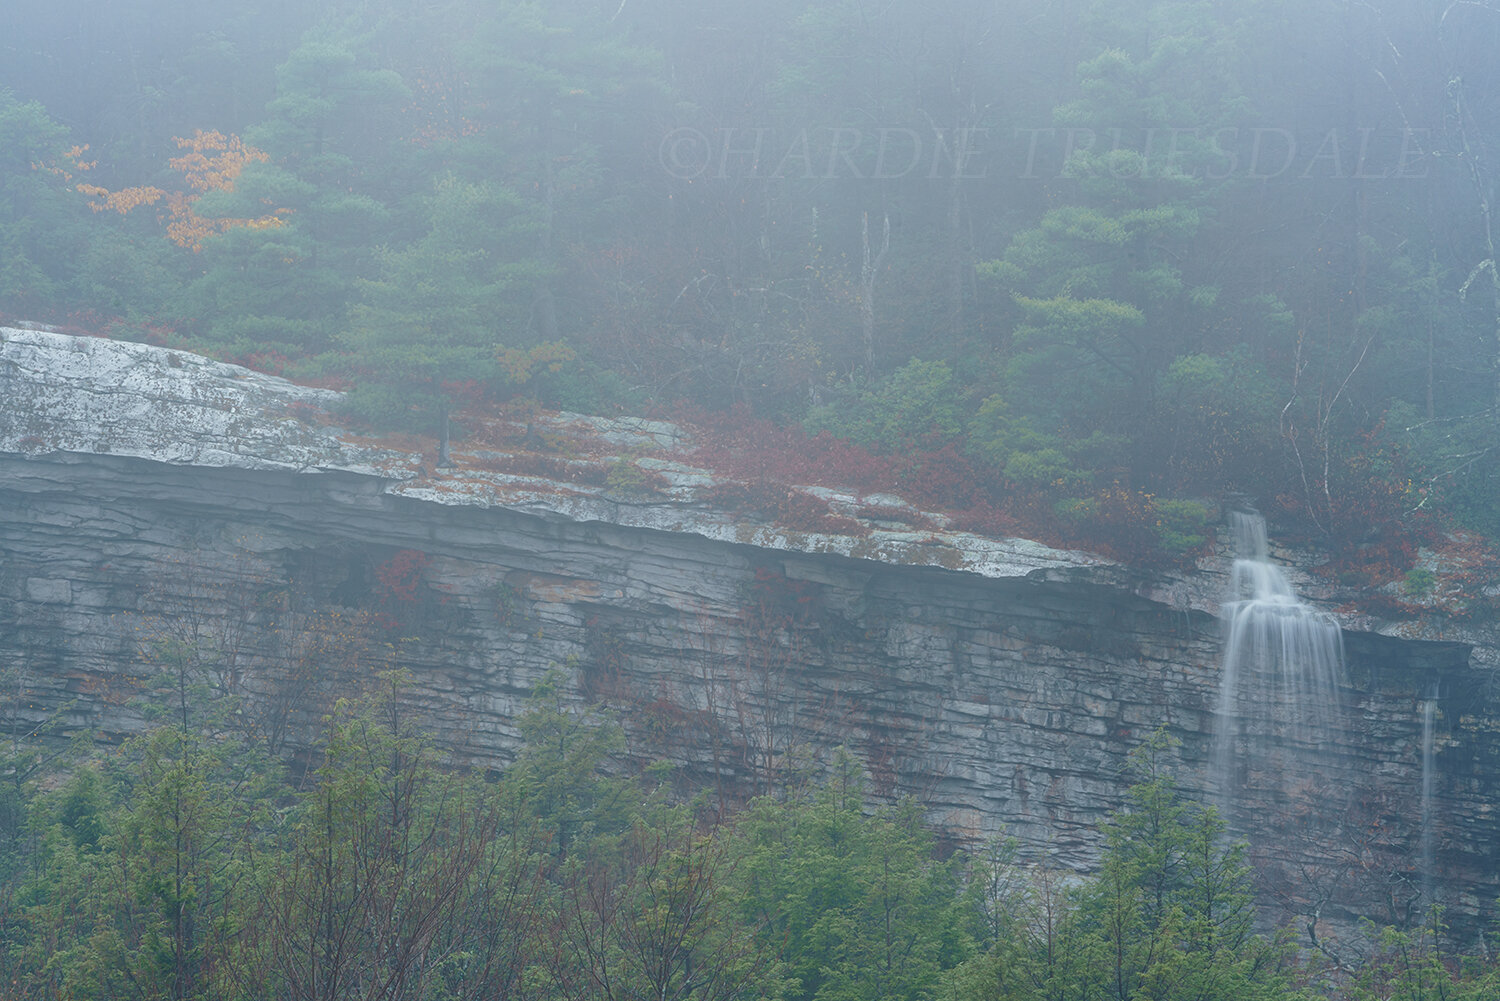 Gks#934 "Misty Rainbow Falls, Minnewaska"